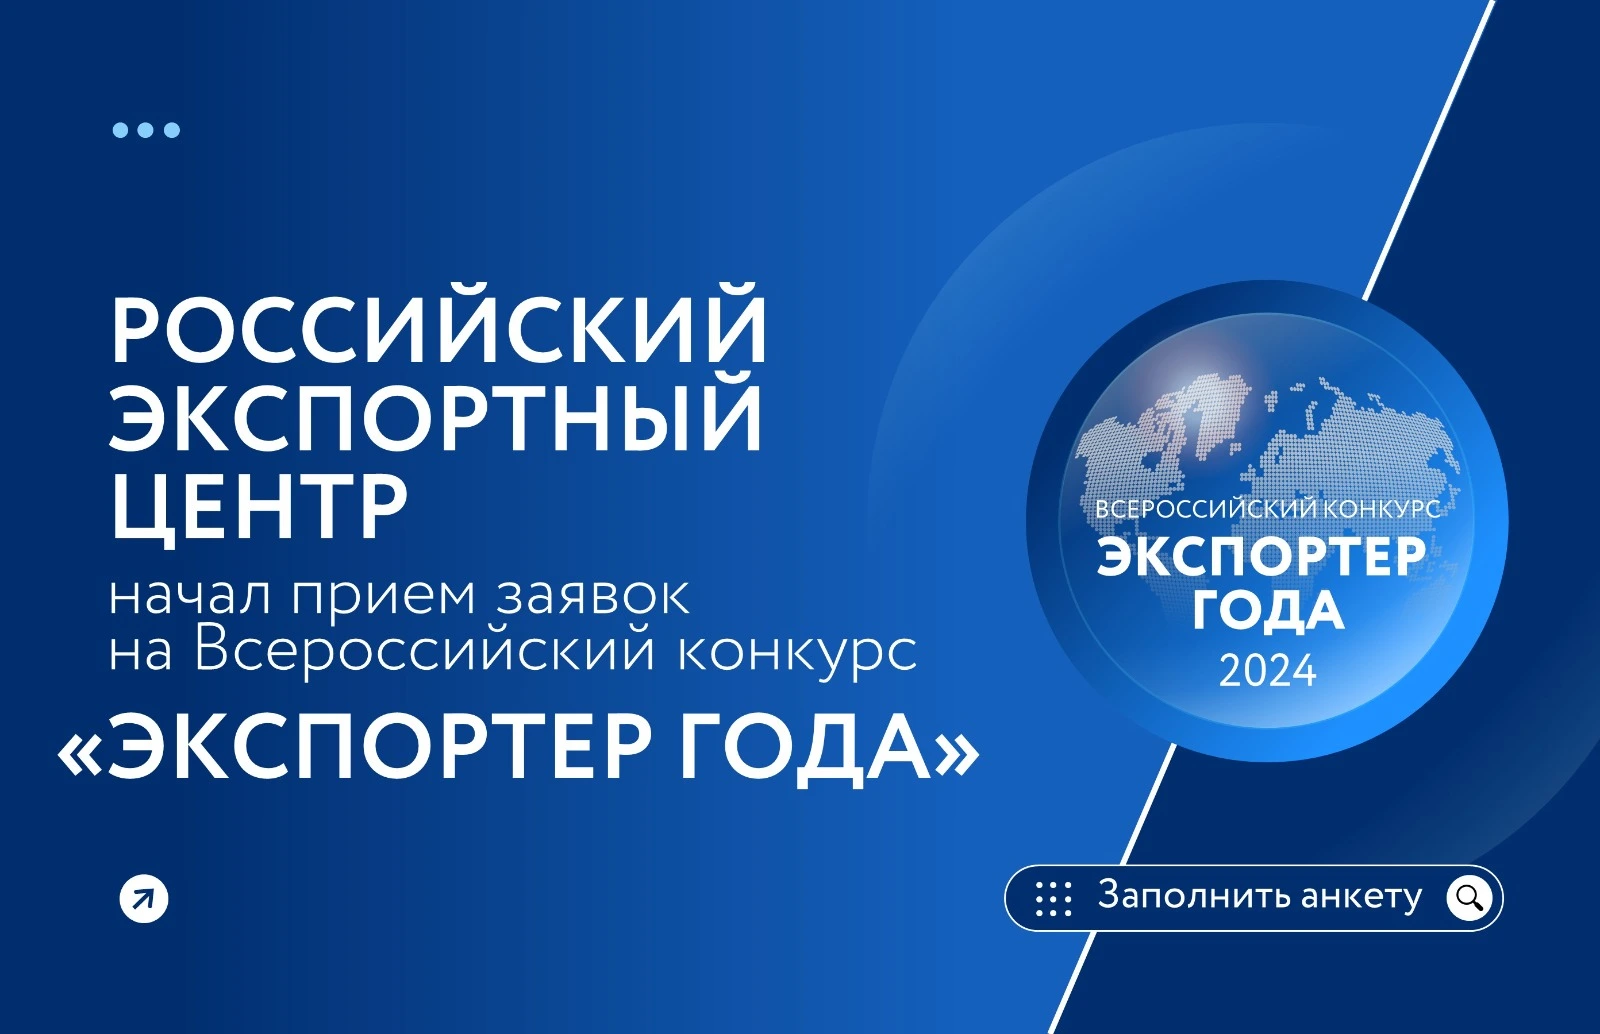 Российский экспортный центр открыл прием заявок на участие в конкурсе «Экспортер года»